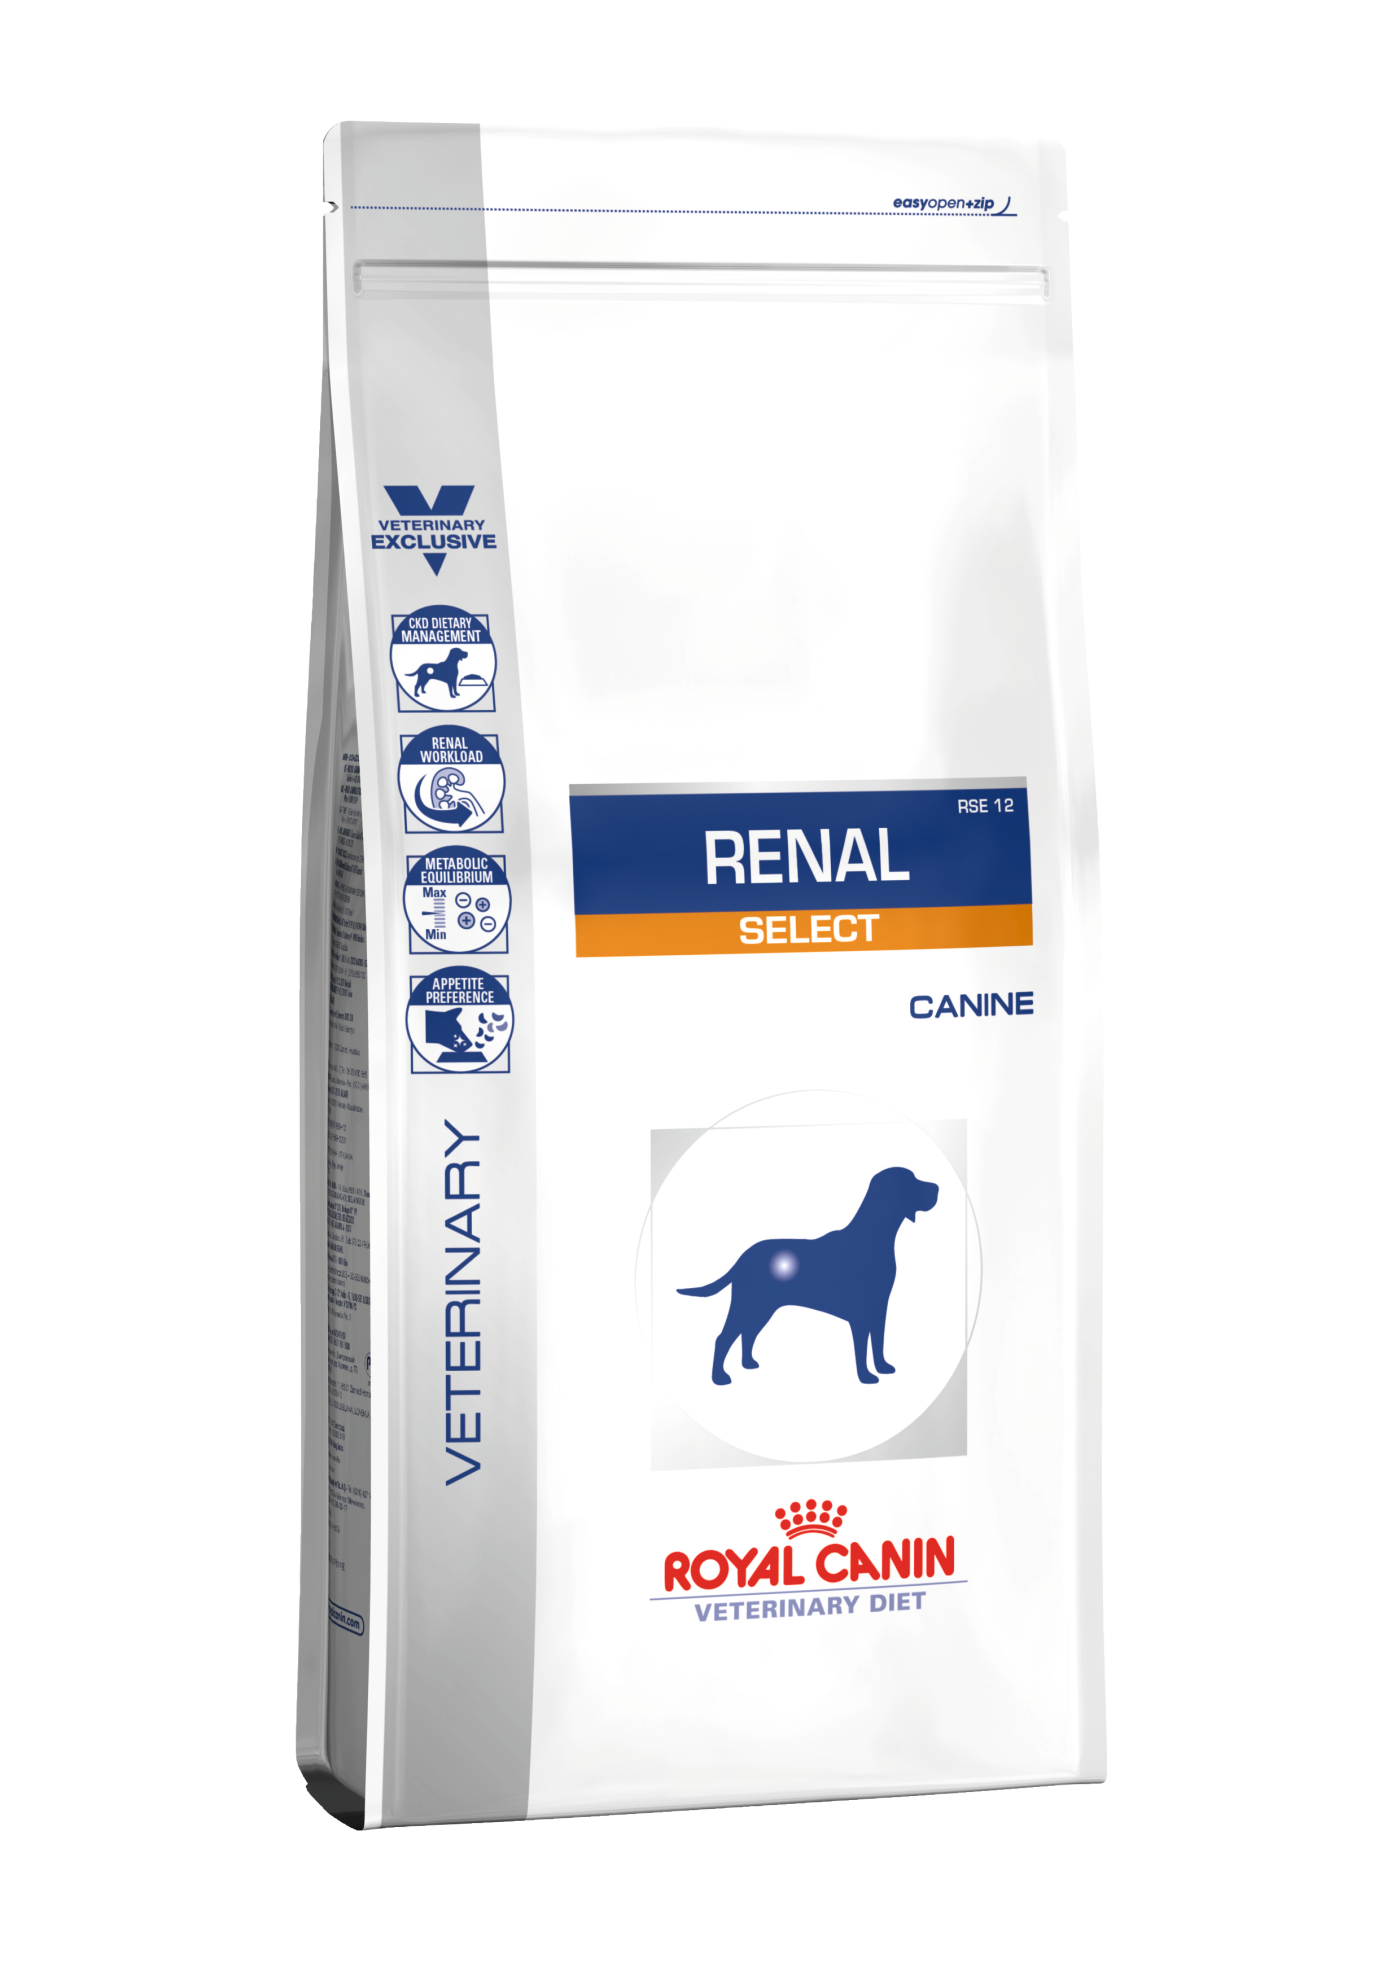 Купить корм royal canin для собак. Royal Canin renal rf14. Роял Канин гастро Интестинал для щенков. Корм Роял Канин Аналлердженик для собак. Royal Canin renal rf14 (14 кг).